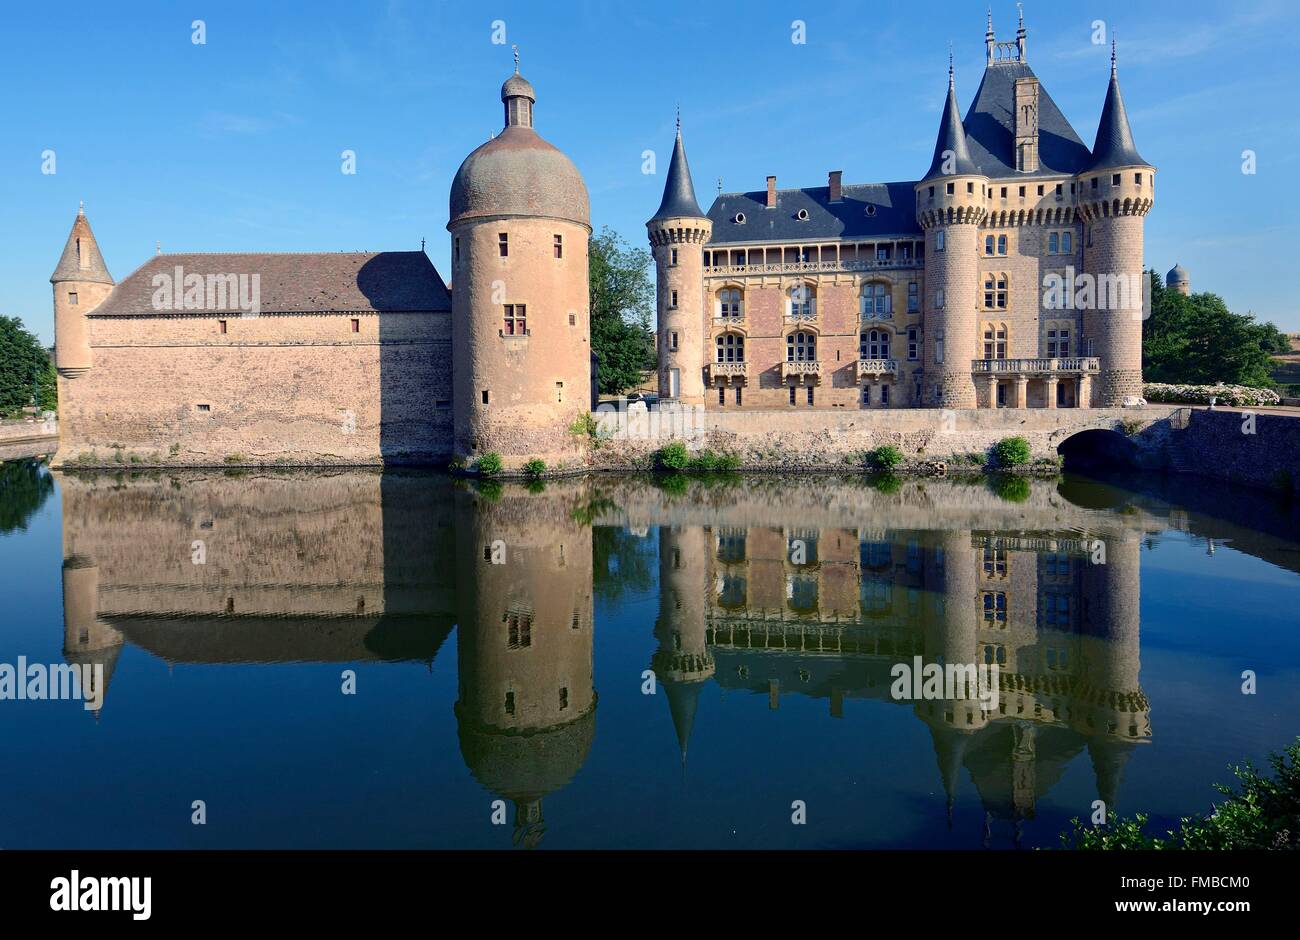 France, Saone et Loire, La Clayette, the castle Stock Photo